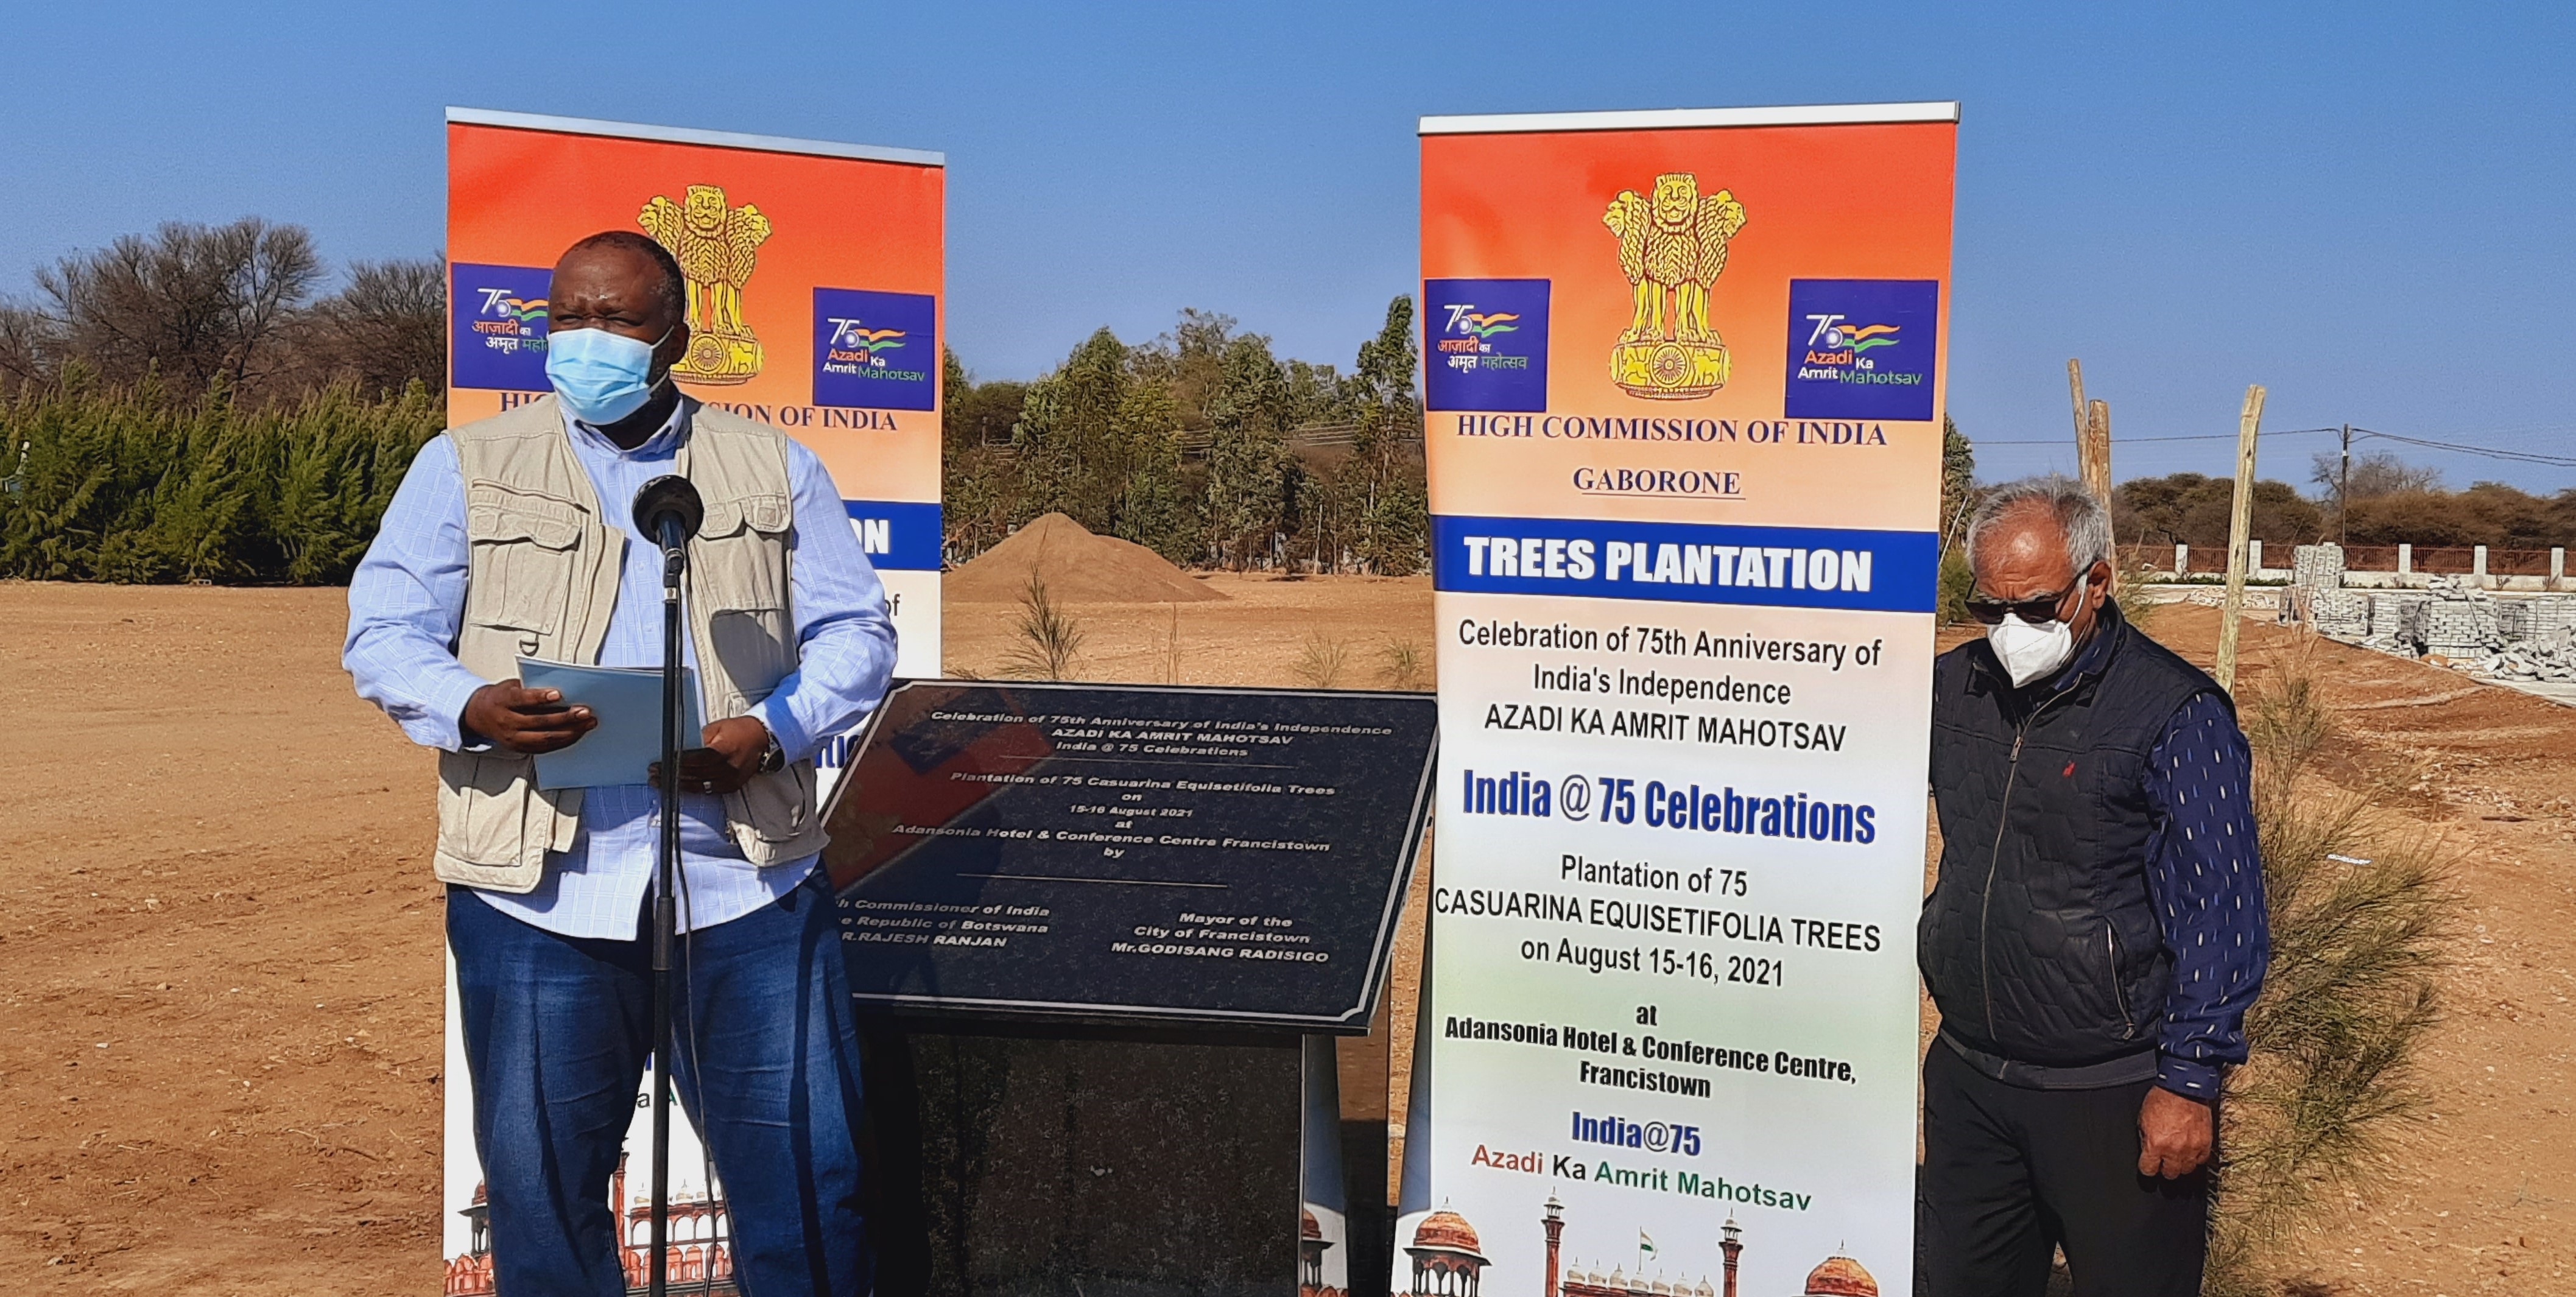 Azadi Ka Amrit Mahotsav: Tree Plantation Ceremony in Francistown